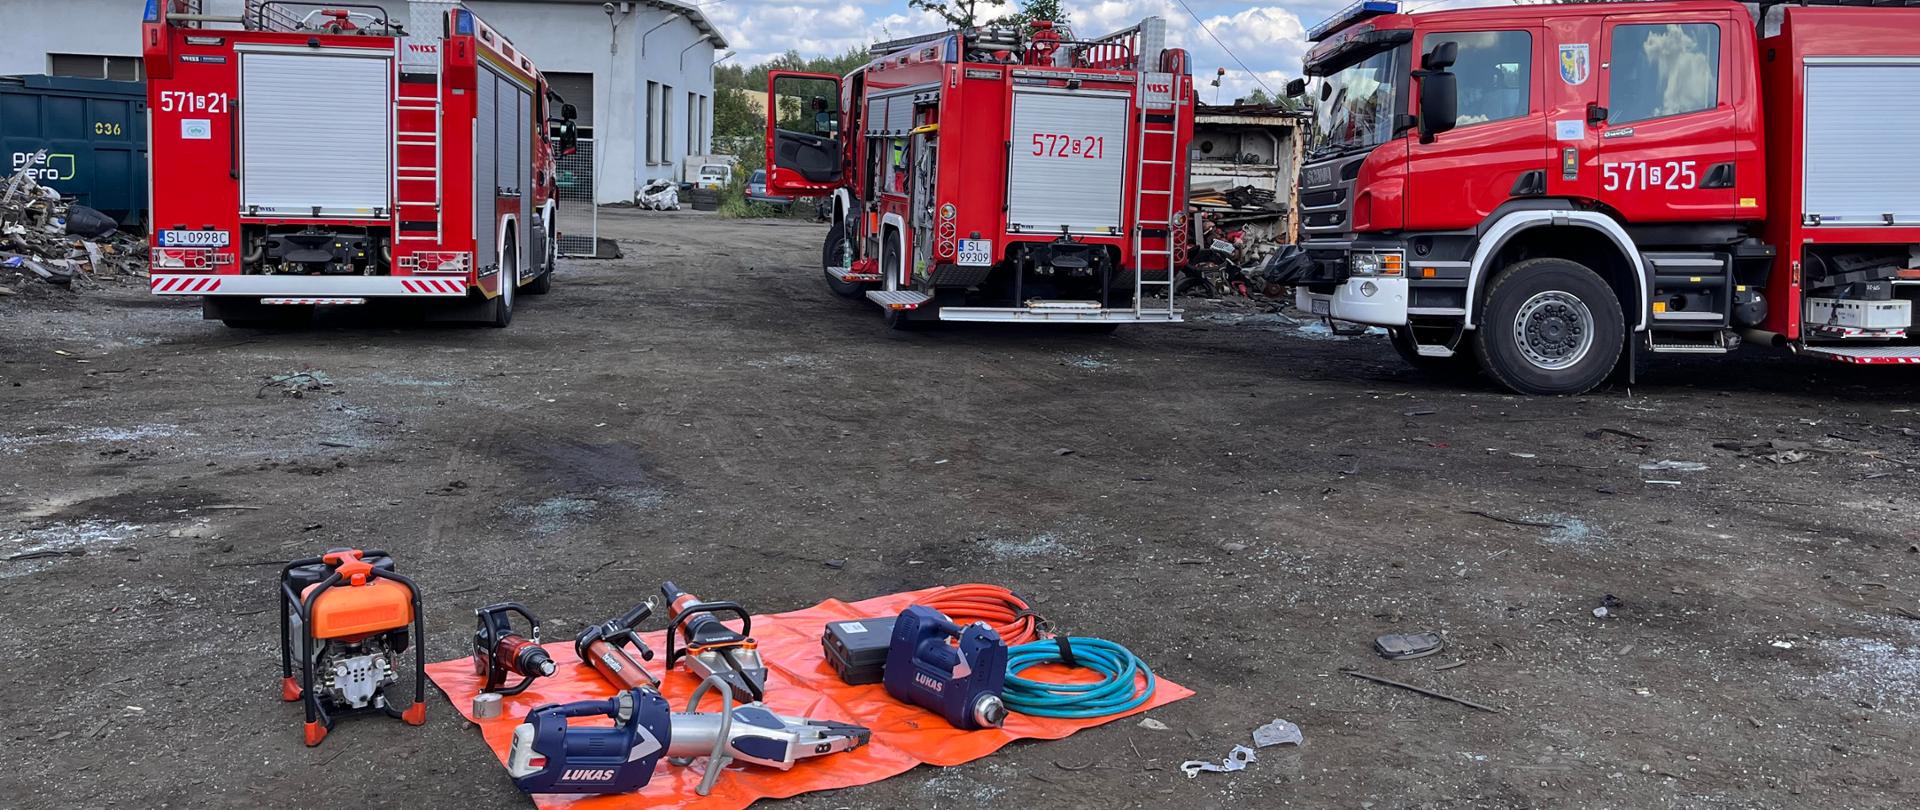 Zdjęcie przedstawia samochody pożarnicze oraz przygotowane pole sprzętowe do ćwiczeń.